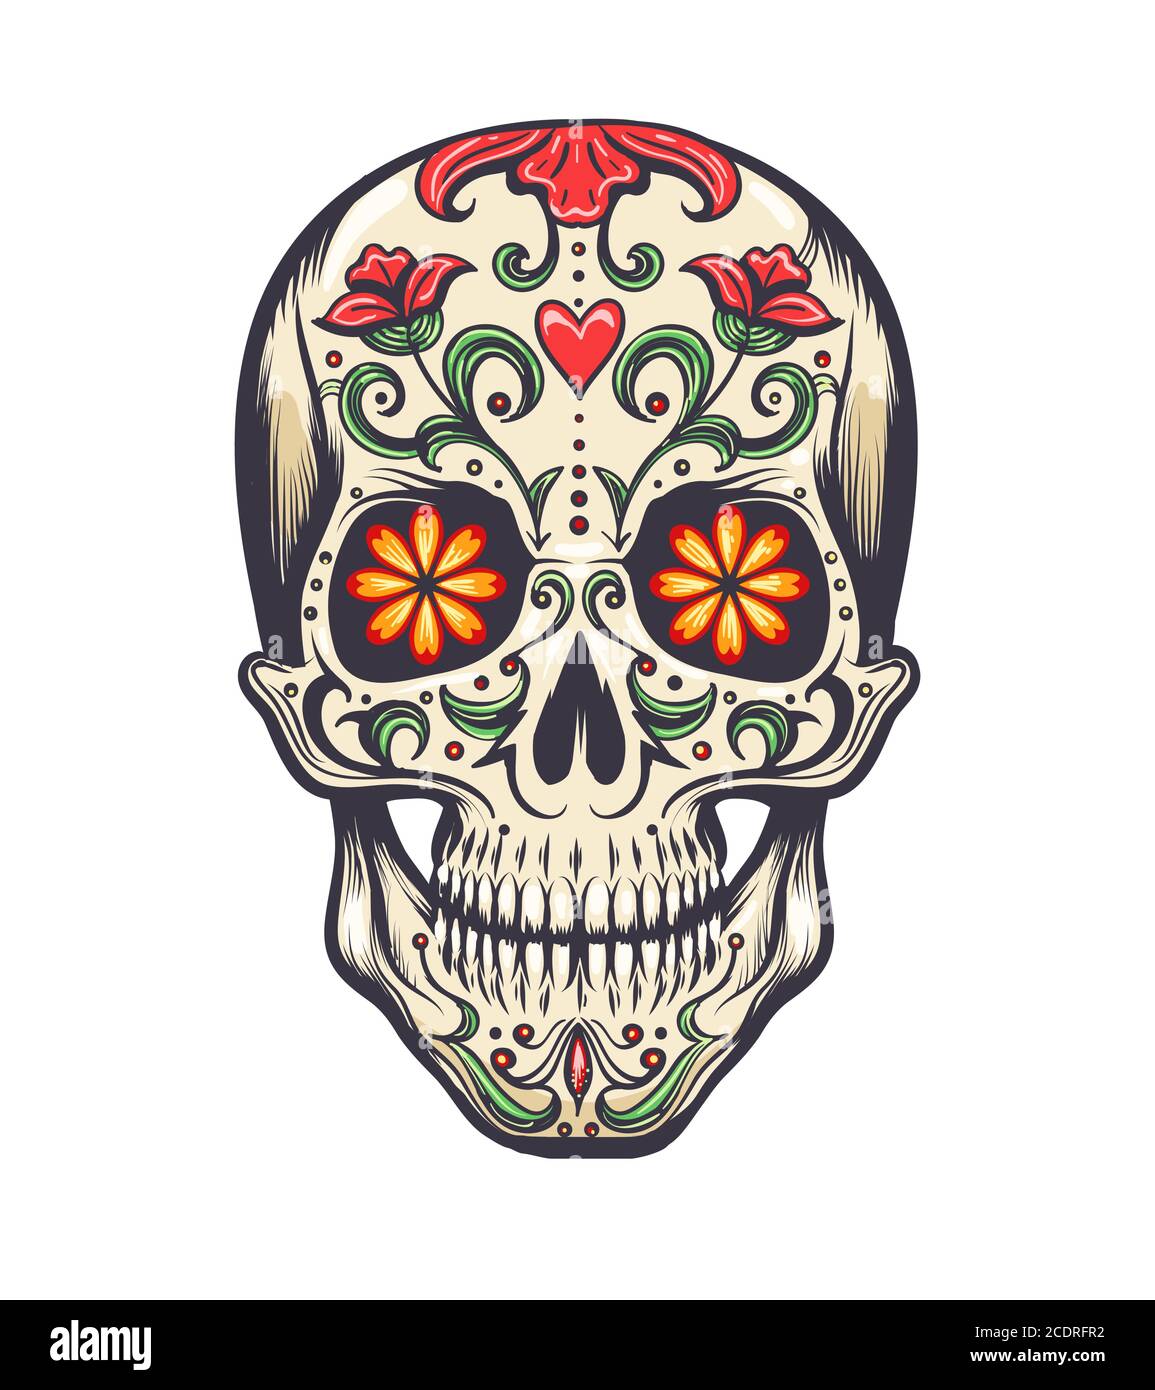 Cranio di zucchero decorato a giorno dei morti (dia de los Muertos) cranio di zucchero, o calavera. Illustrazione vettoriale Illustrazione Vettoriale